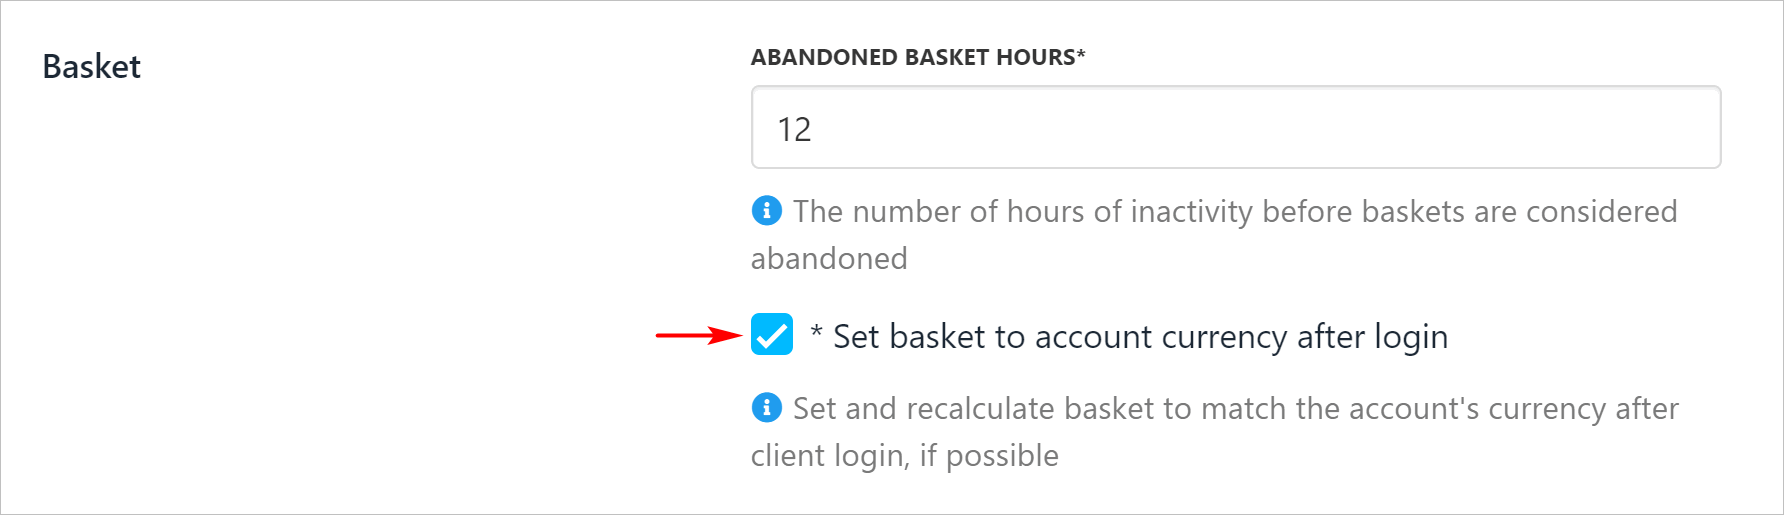 Set time to abandon basket